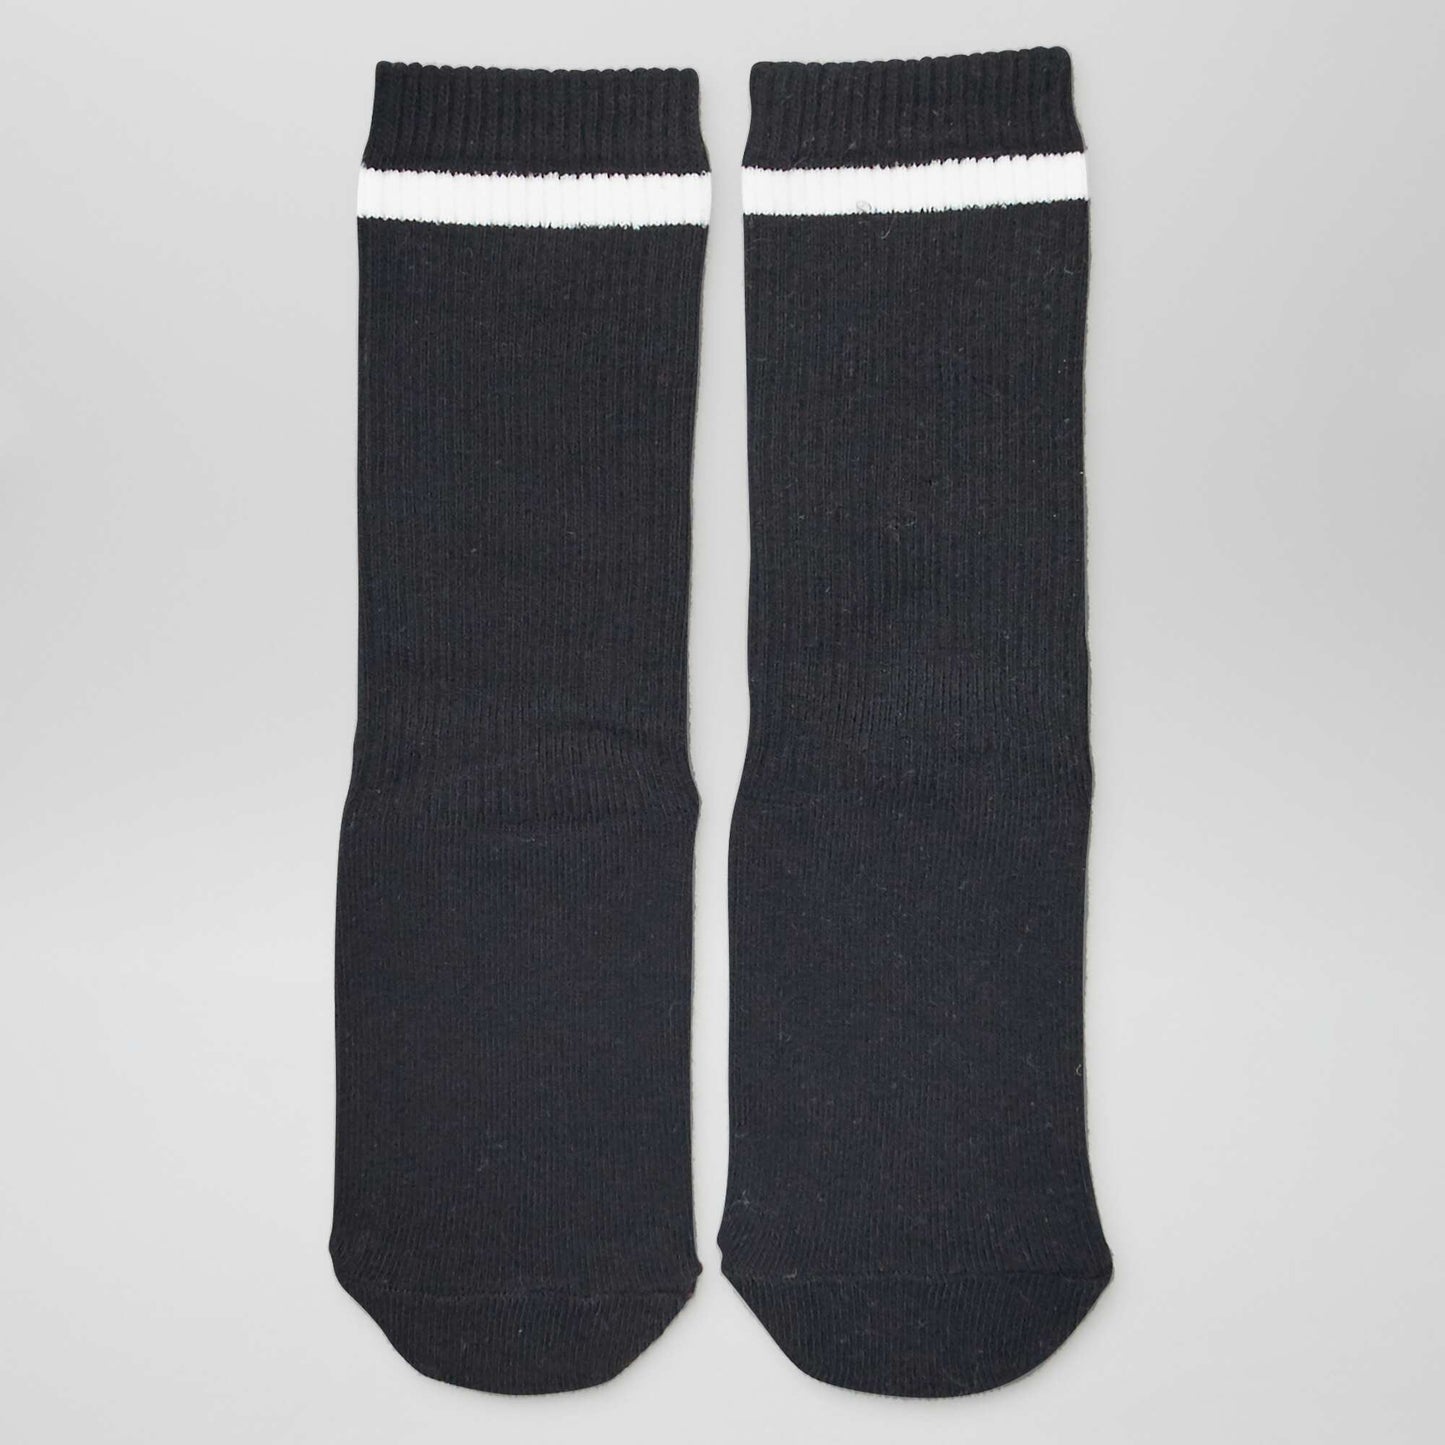 Lot de 3 paires de chaussettes hautes sport Blanc/gris/noir